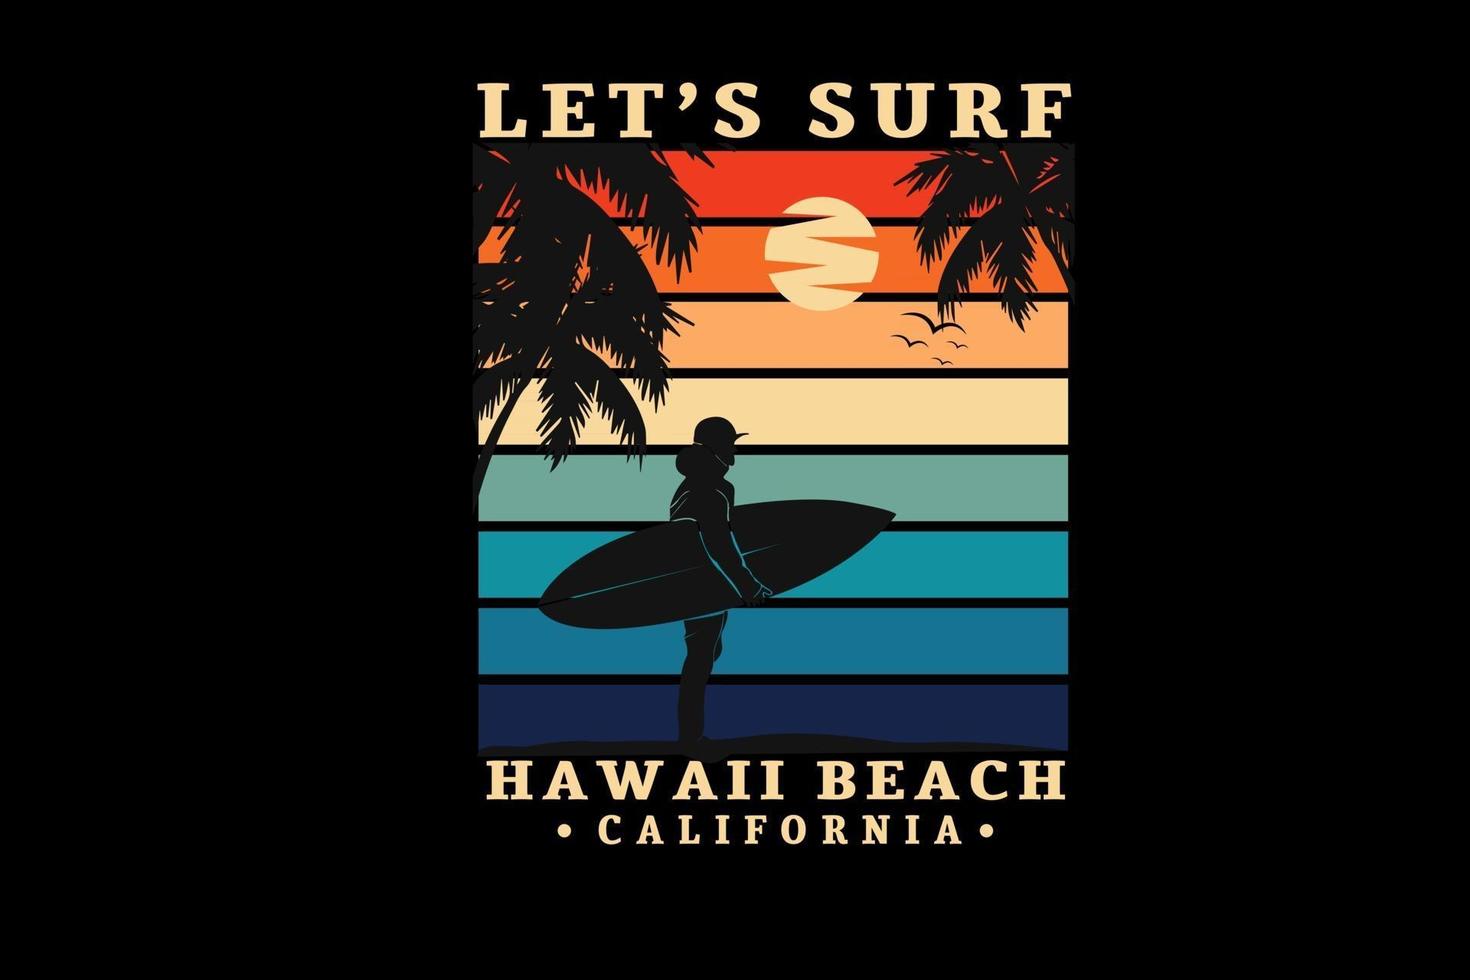 Let's surf hawaii beach california couleur vert orange et crème vecteur